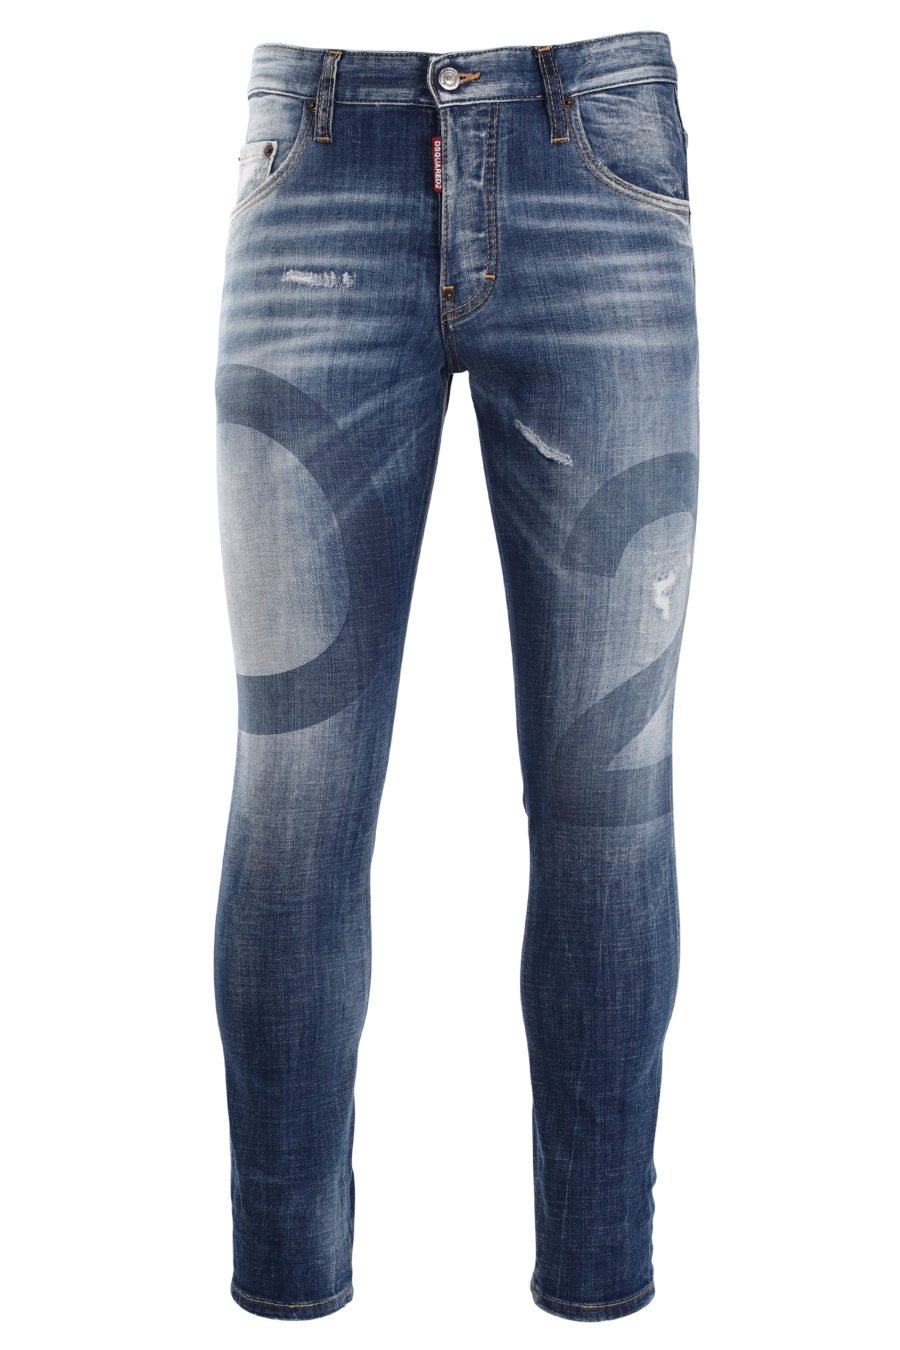 Pantalón vaquero "skater" azul claro con maxi logo "D2" - IMG 0006